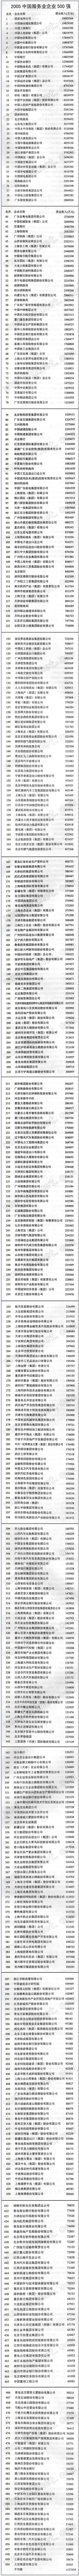 2005中国服务业500强.jpg